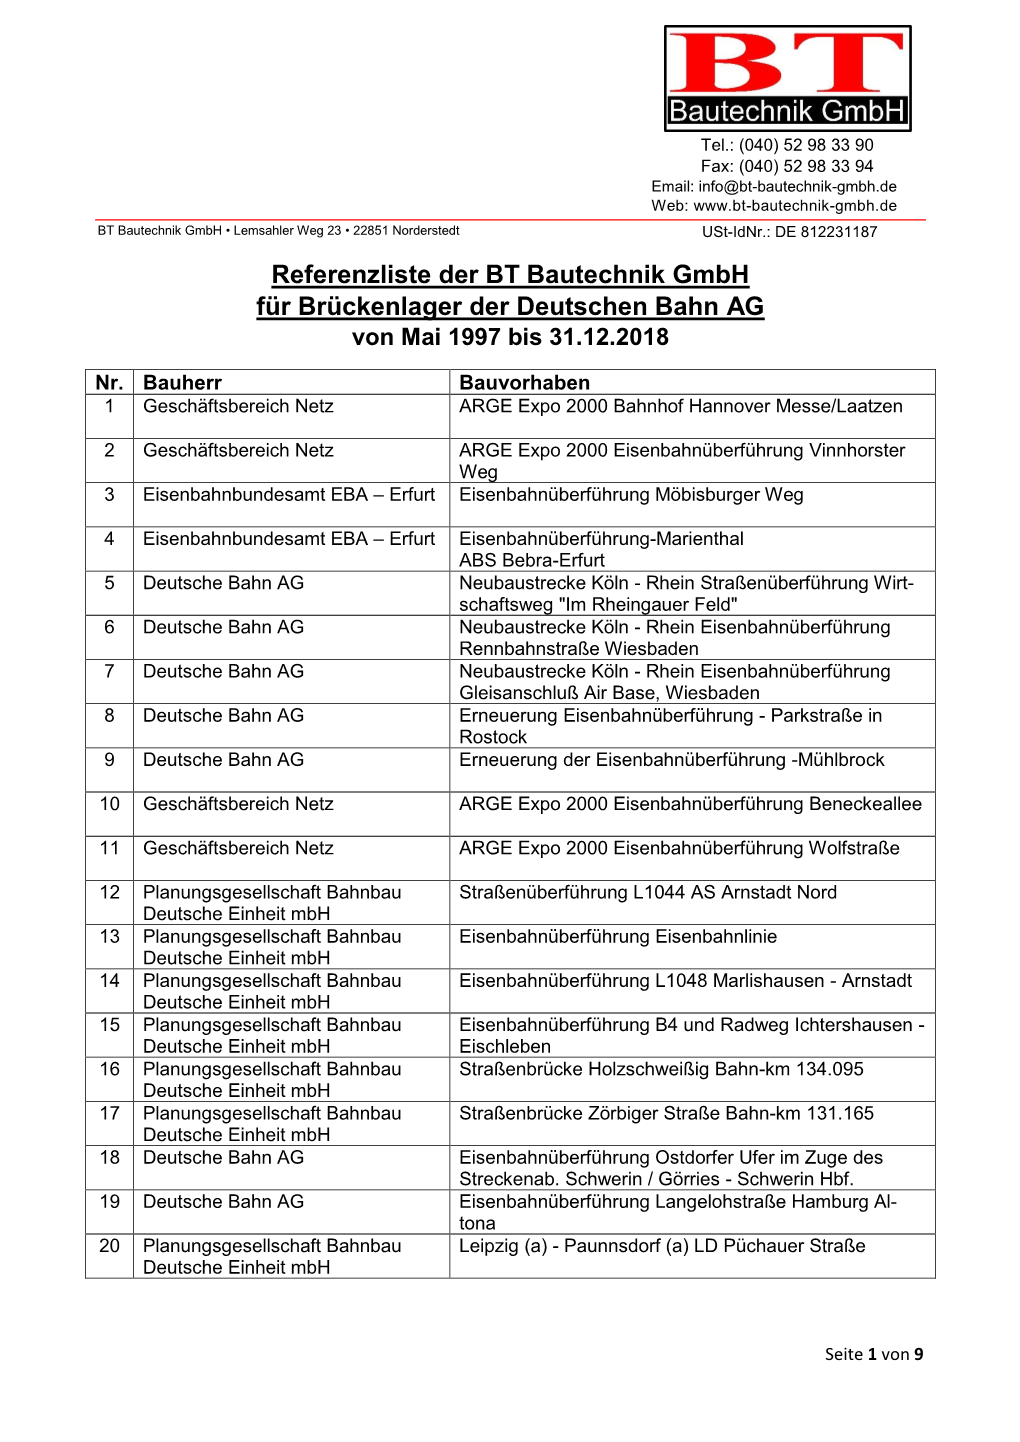 Referenzliste Brückenlager Deutsche Bahn PDF, 257 KB